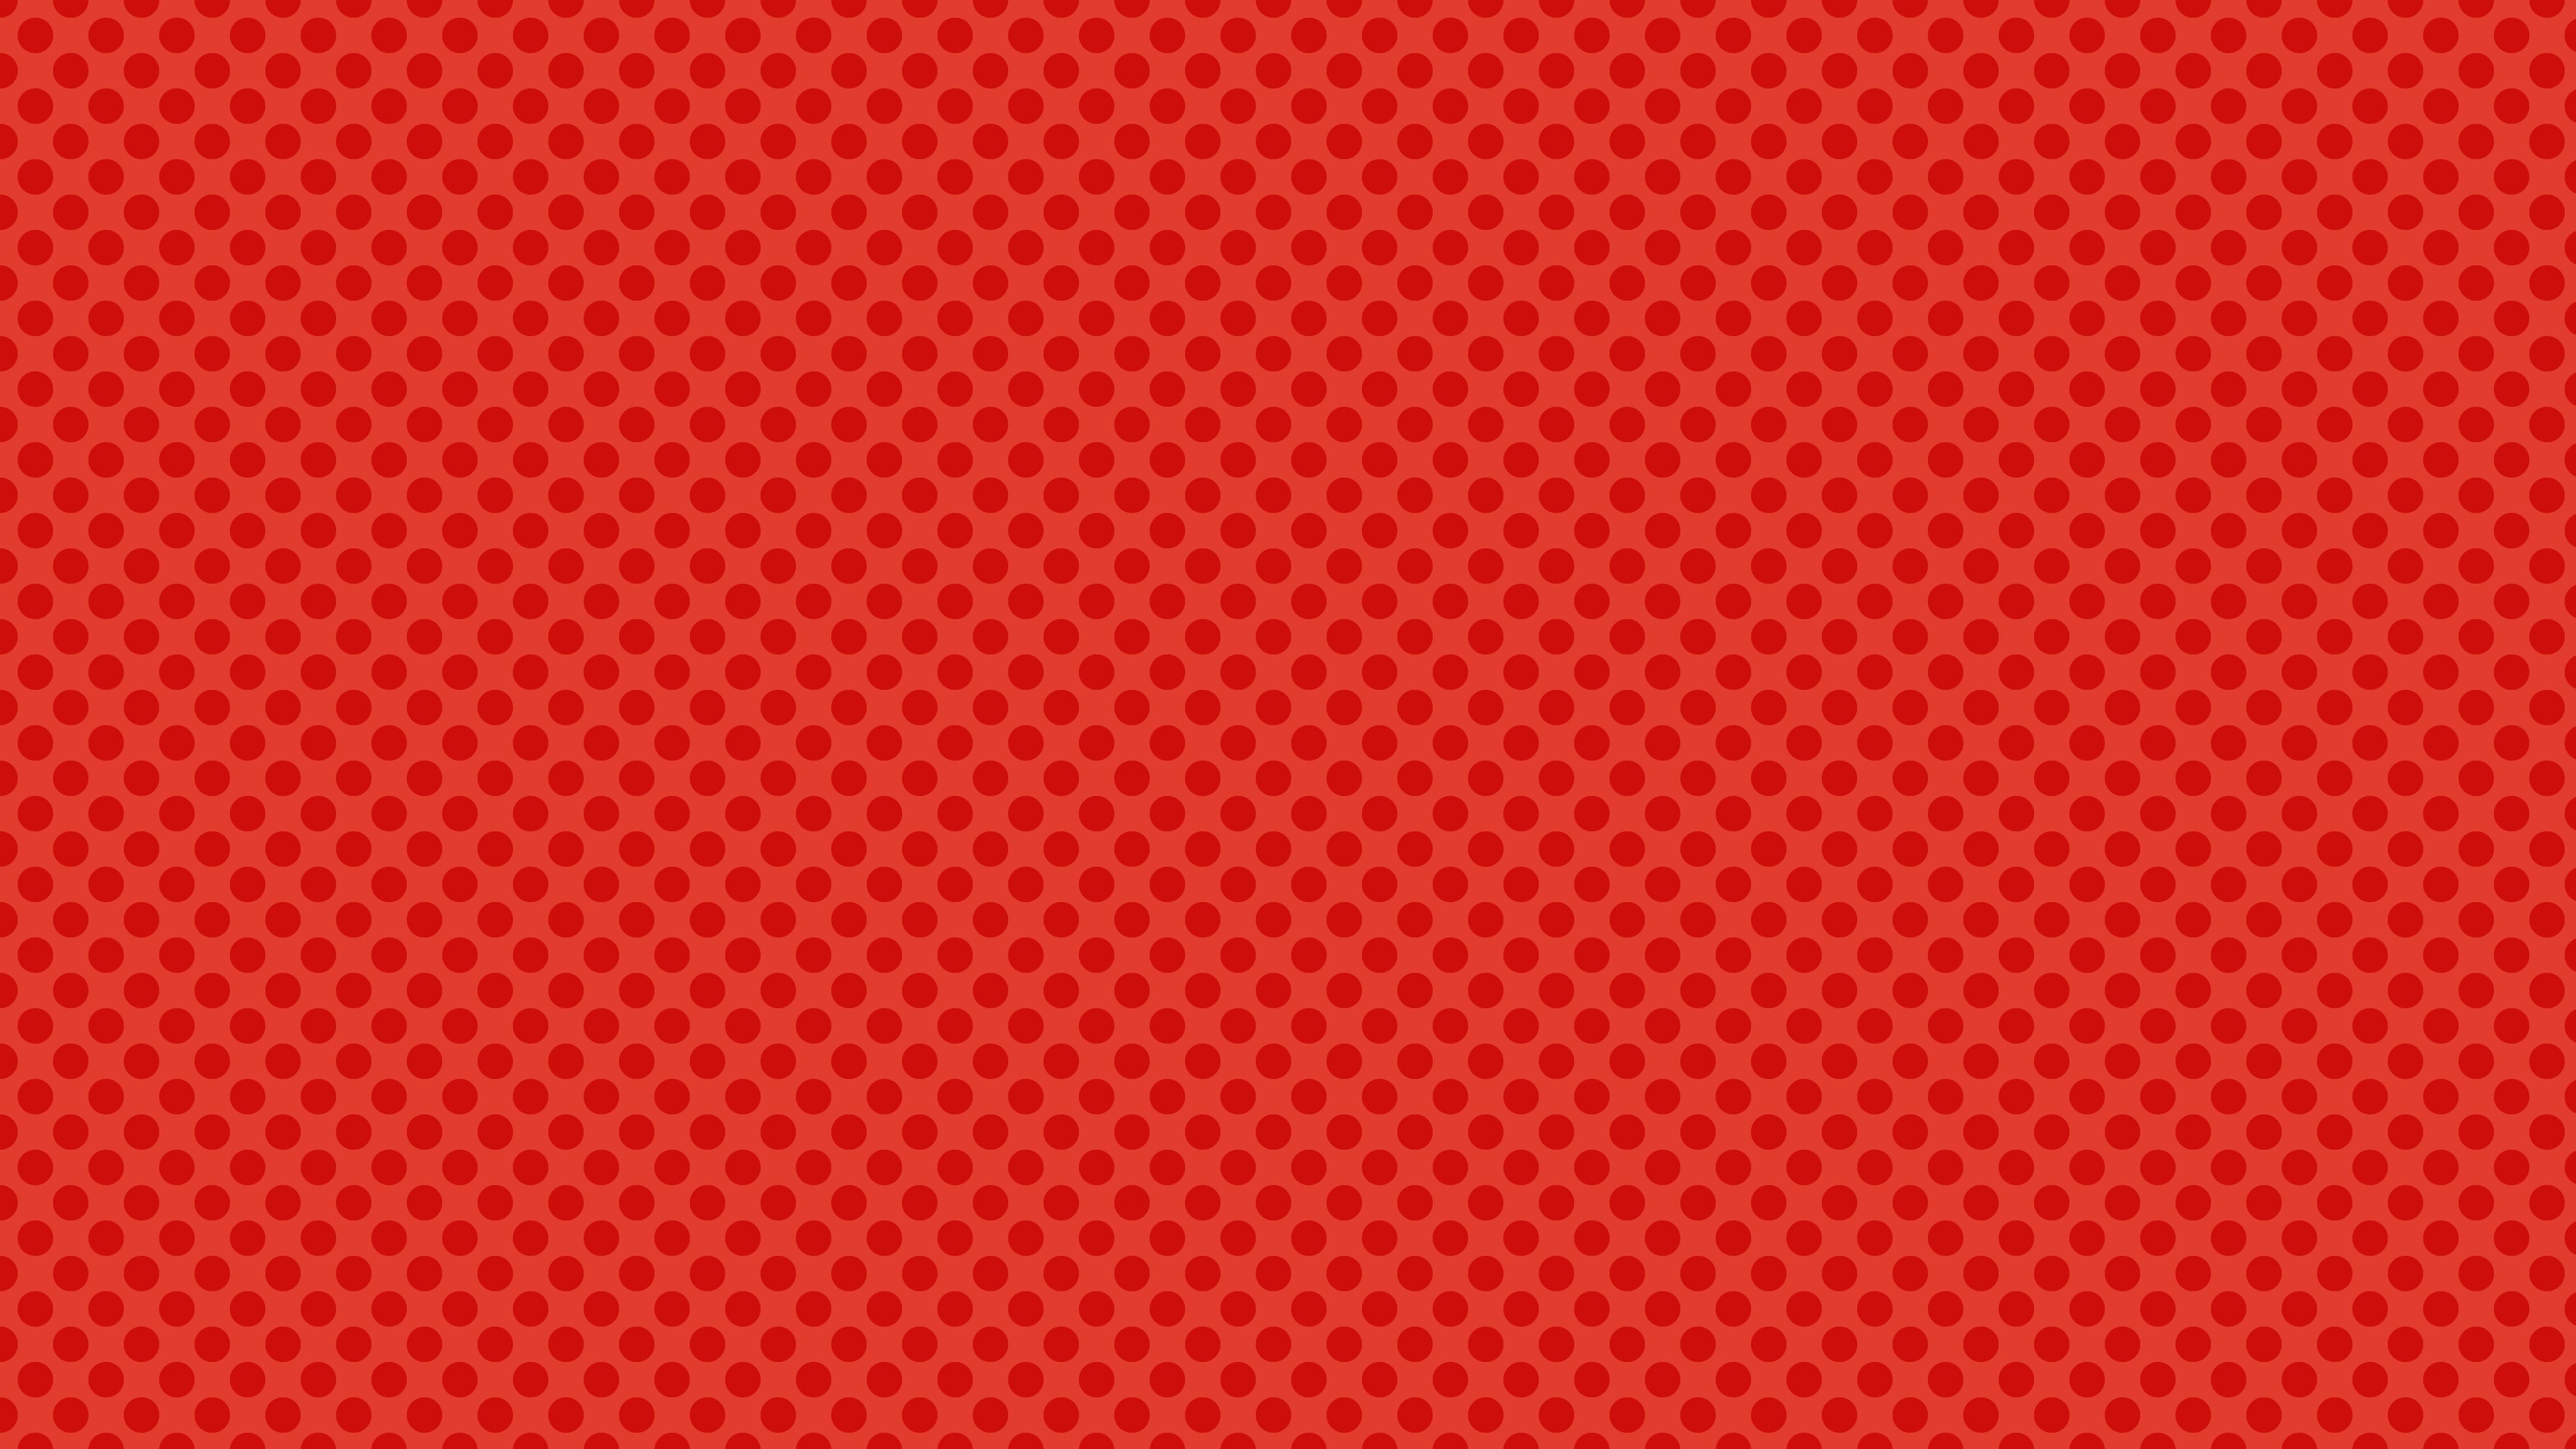 Ben Day Dots Red, by Studio Ten Design